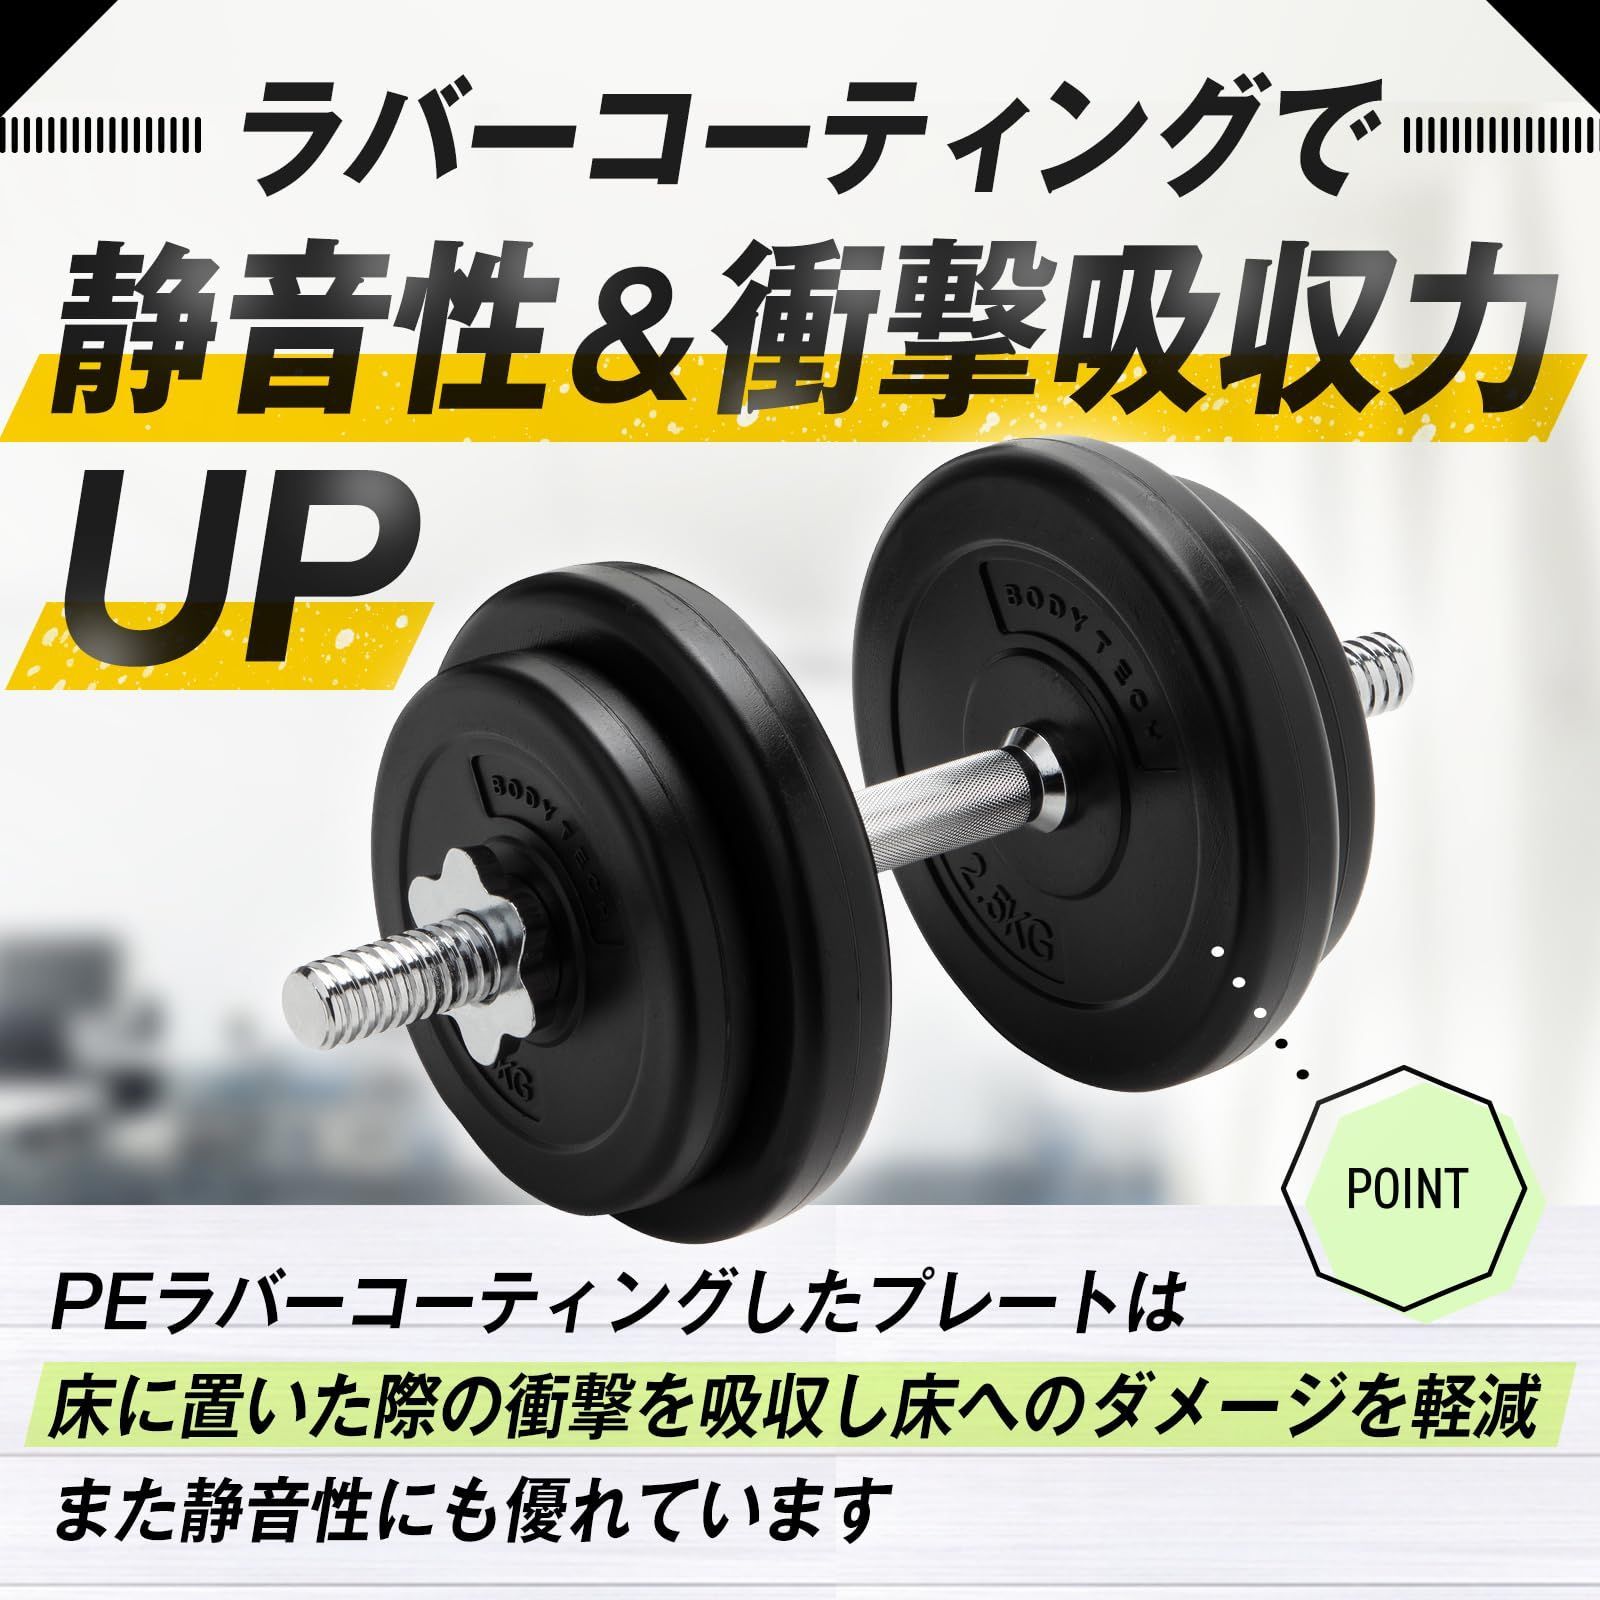 【特価セール】【Amazon.co.jp限定】 ボディテック PEコーティングダンベル 可変式20kgセット(10kg × 2個セット)  ホームトレーニング BTST91TL001_1